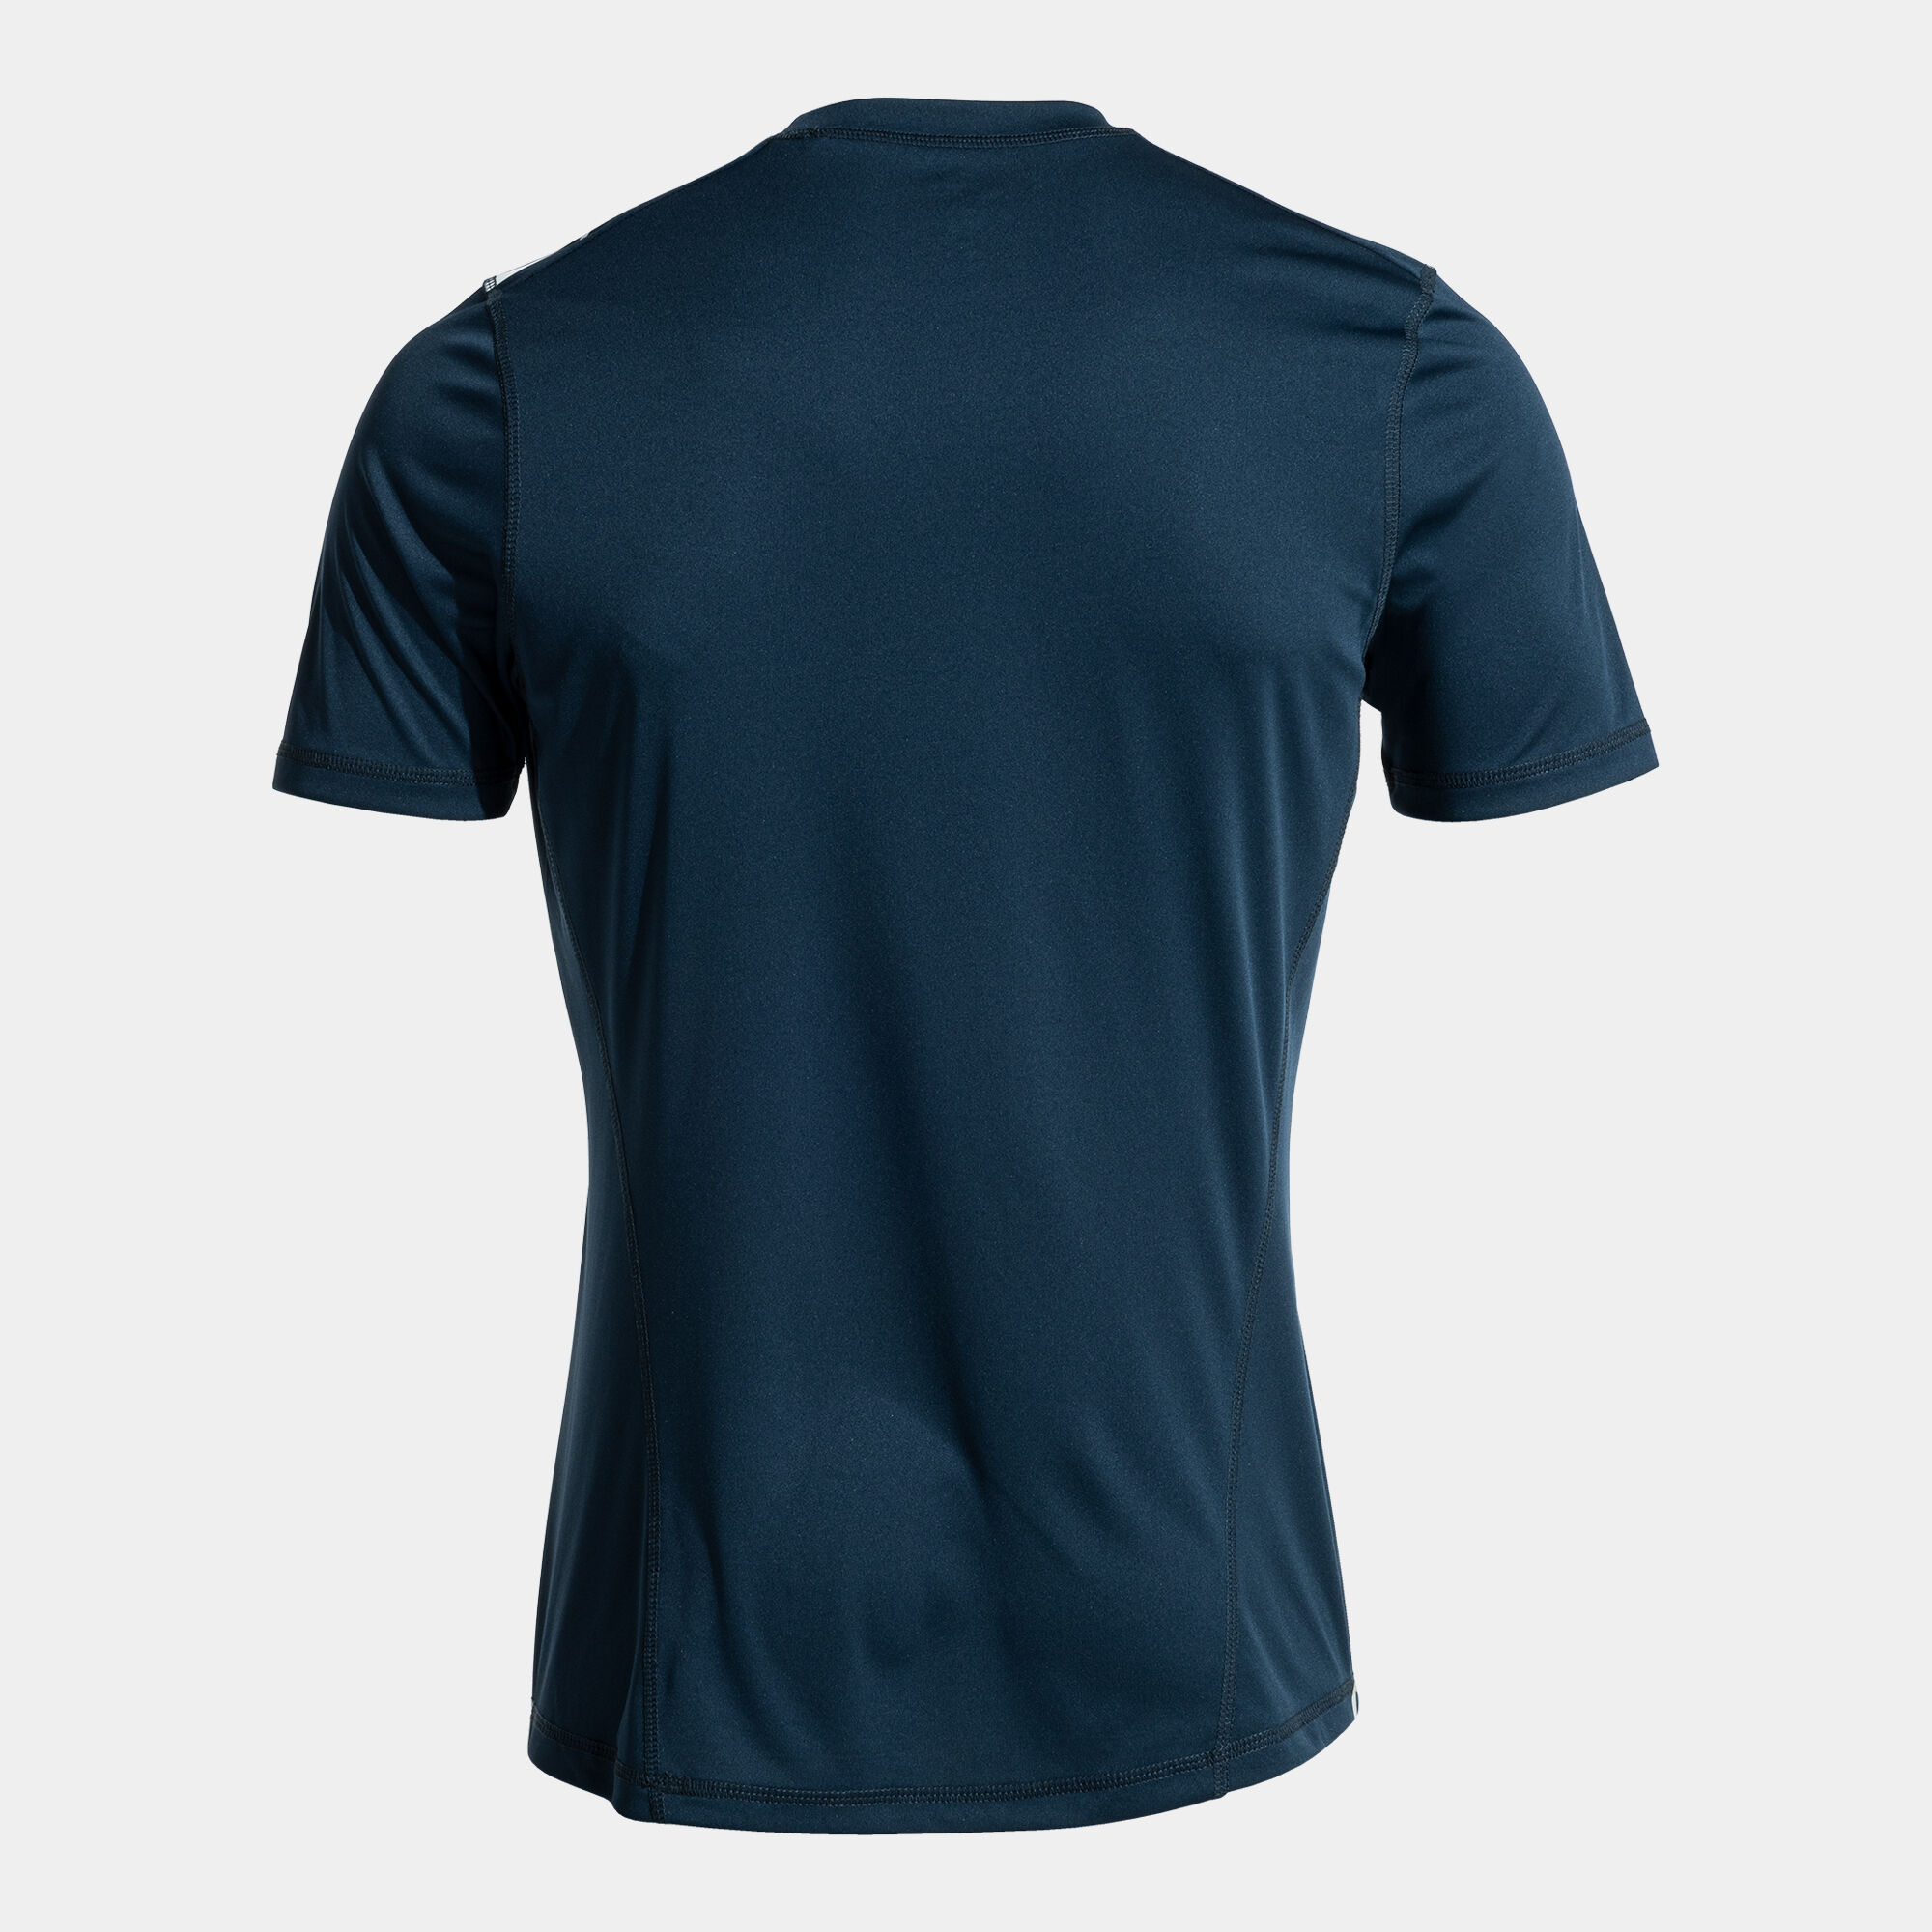 Camiseta manga corta hombre Olimpiada handball marino